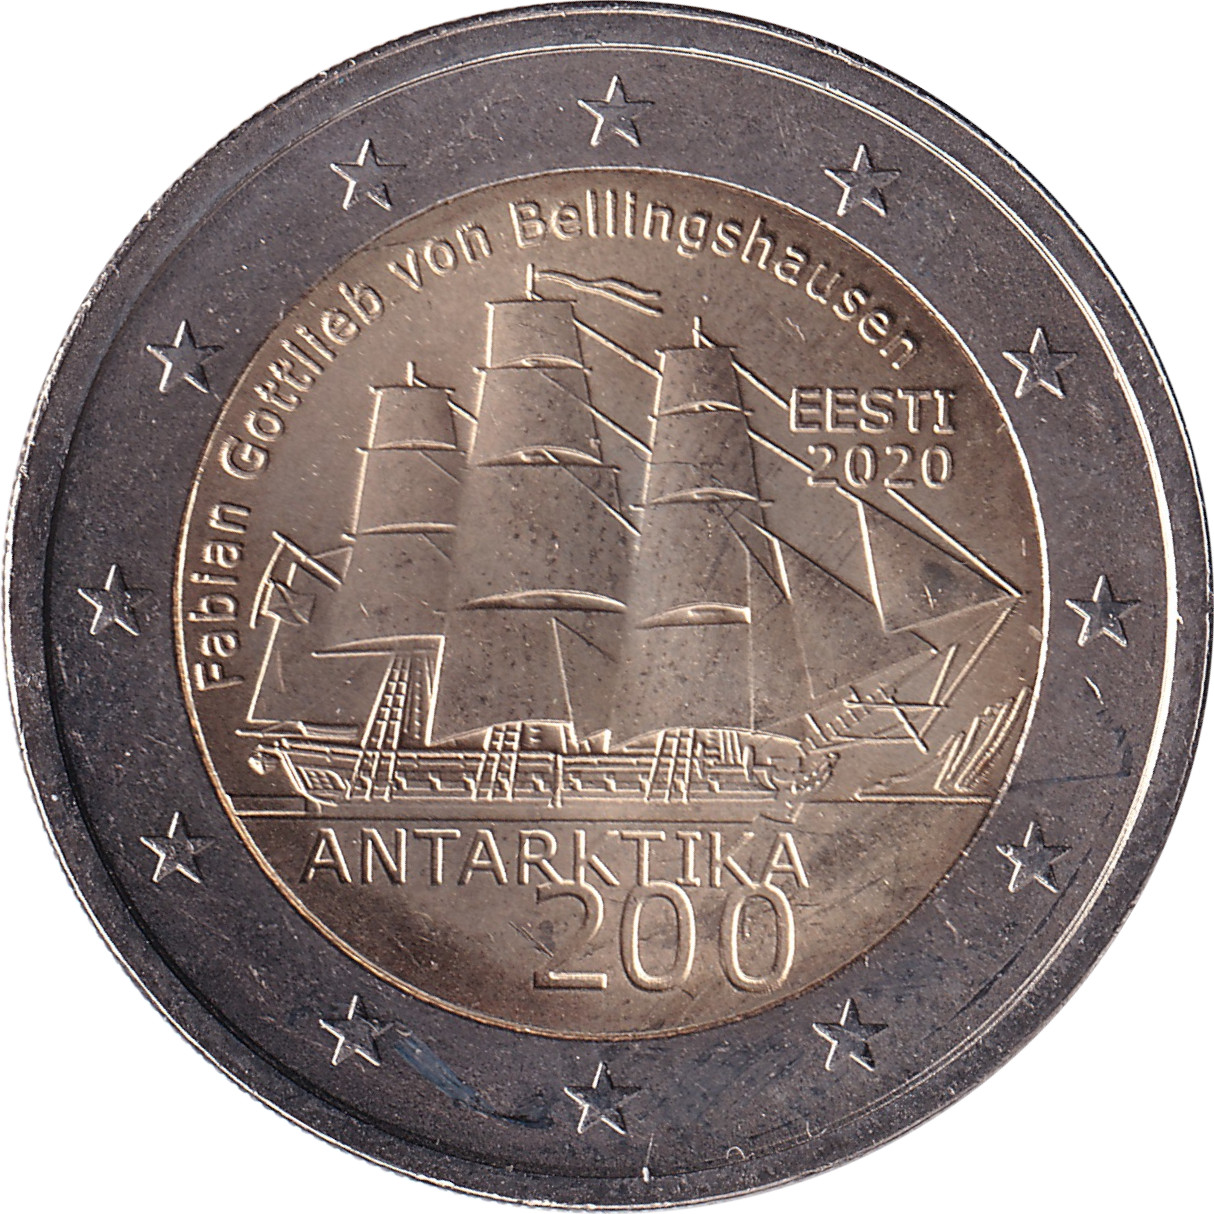 2 euro - Découverte de l'Antarctique - 200 years